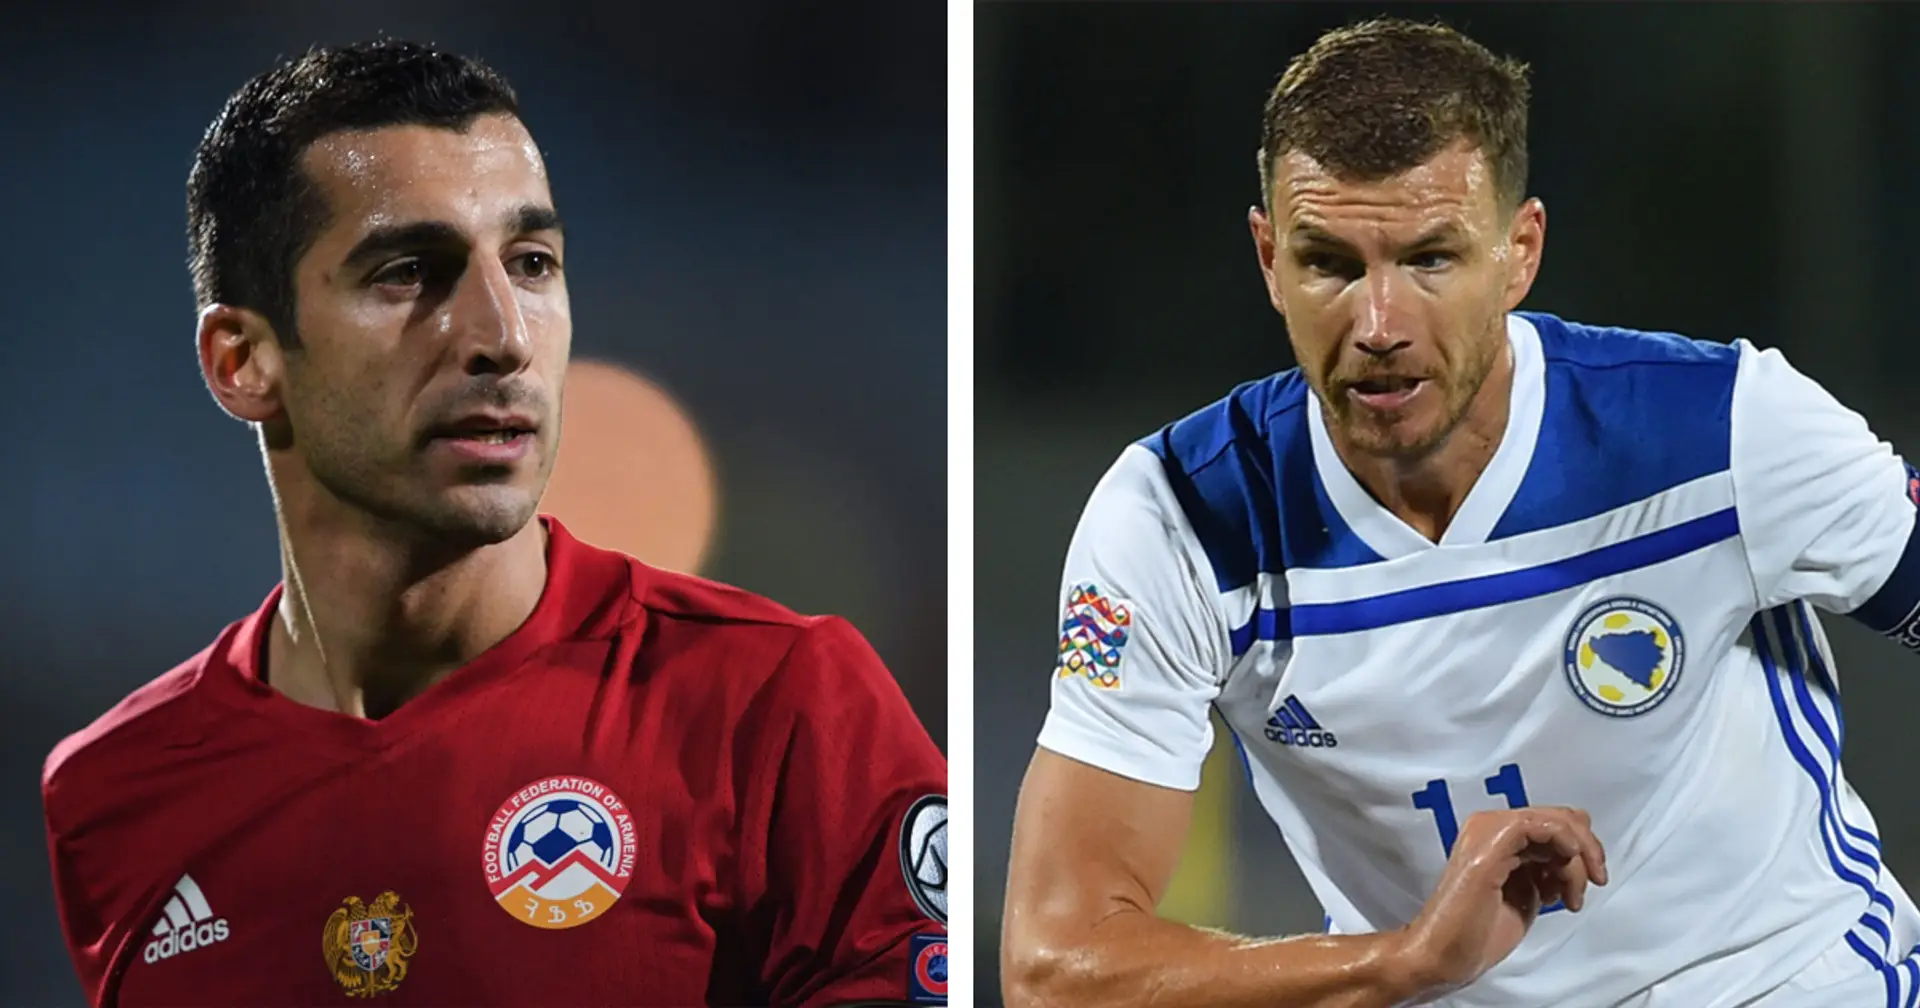 Le due facce della Roma: Mkhitaryan leader e gol nel finale che salva l'Armenia. Dzeko entra a gara in corso ma non incide